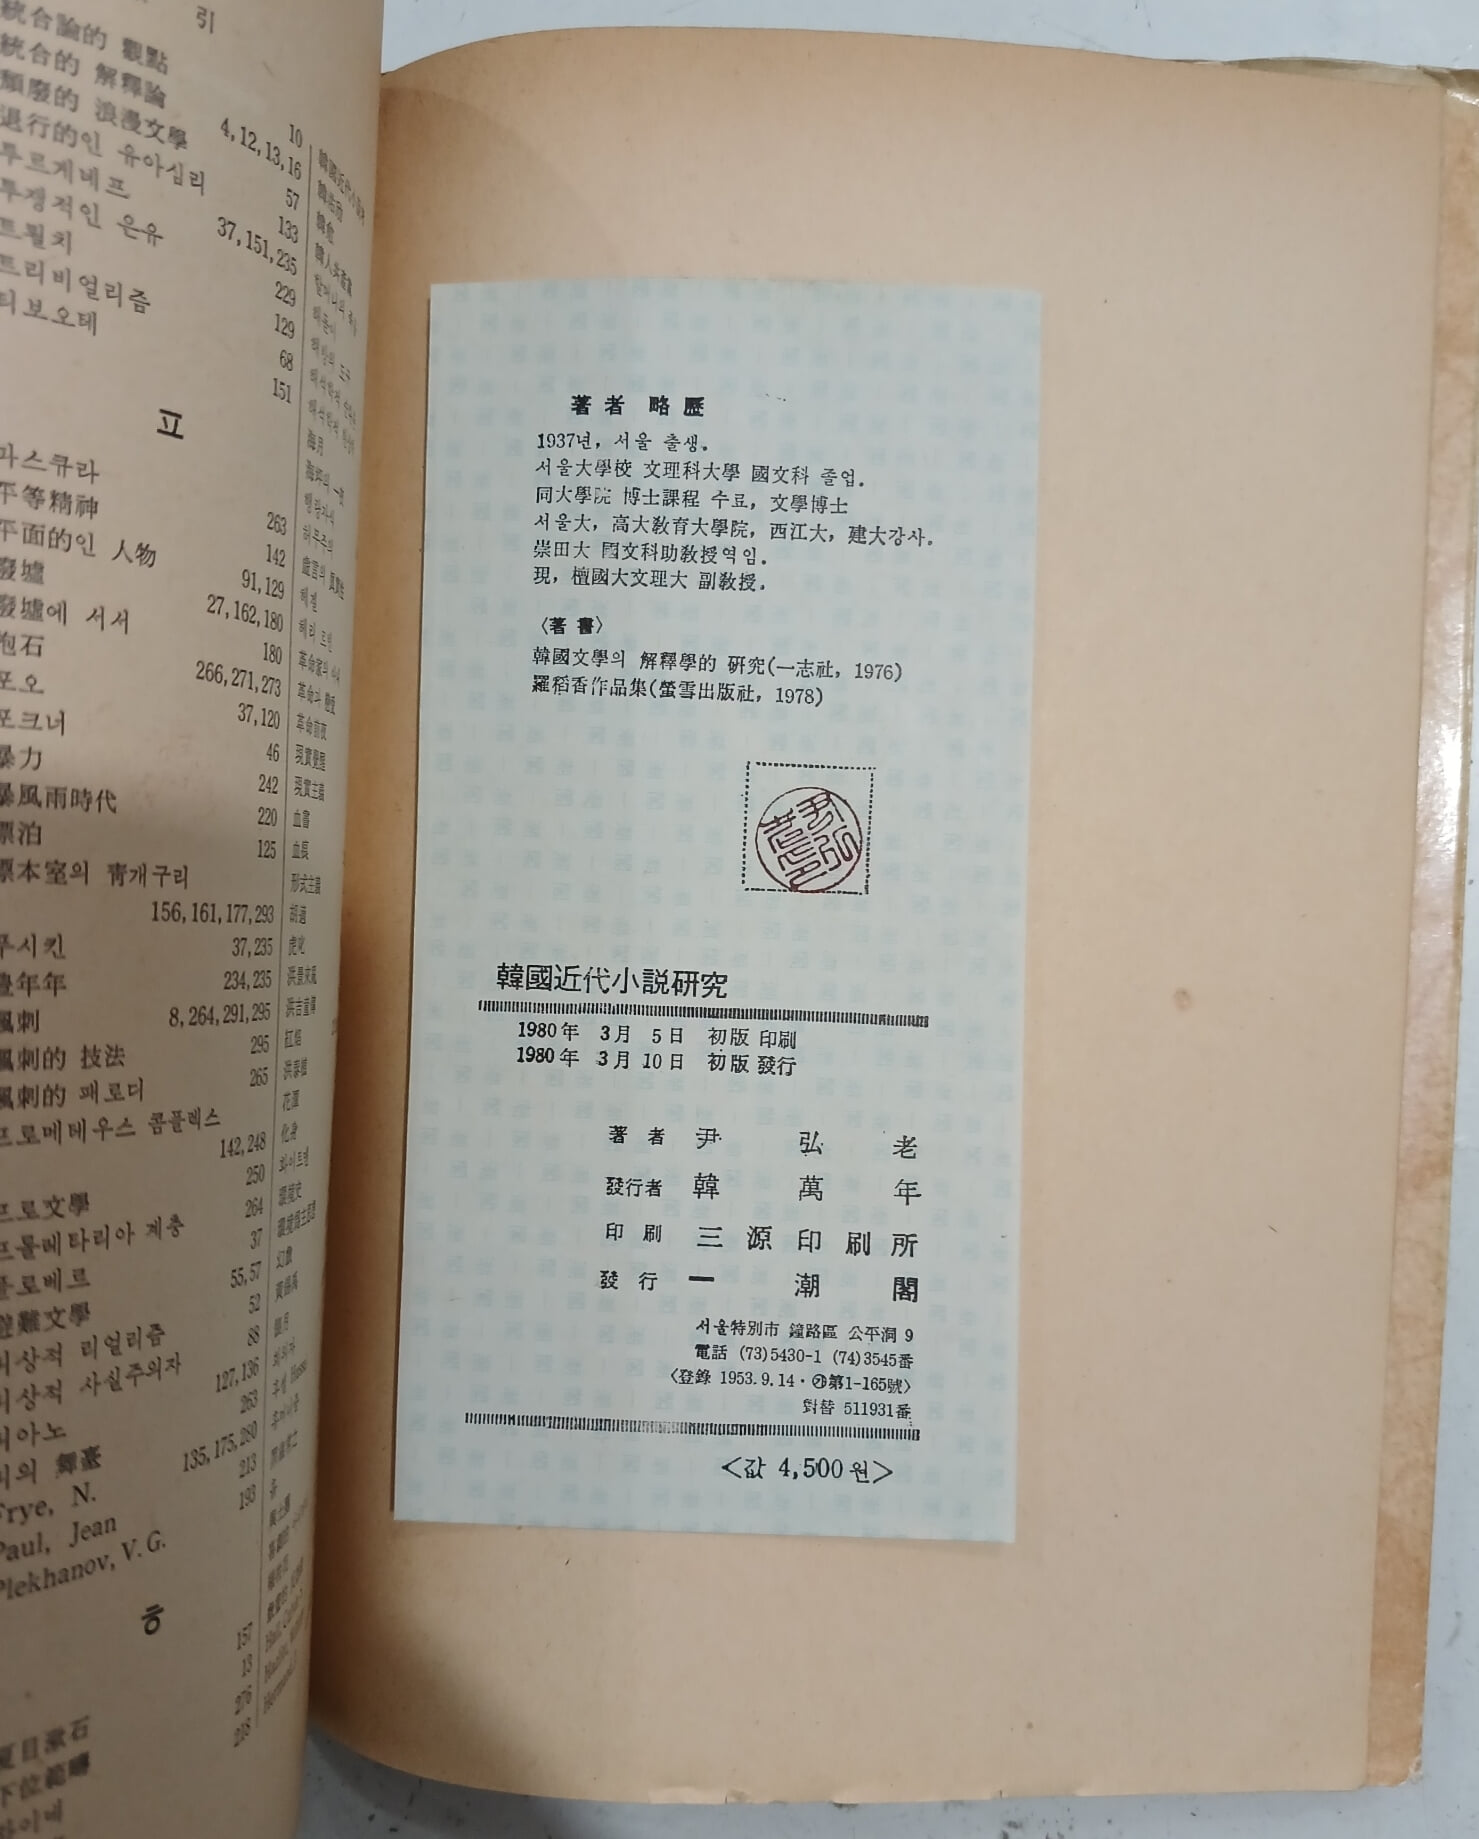 한국근대소설연구 - 20세기 리얼리즘 소설의 형성을 중심으로 | 1980년 3월 초판